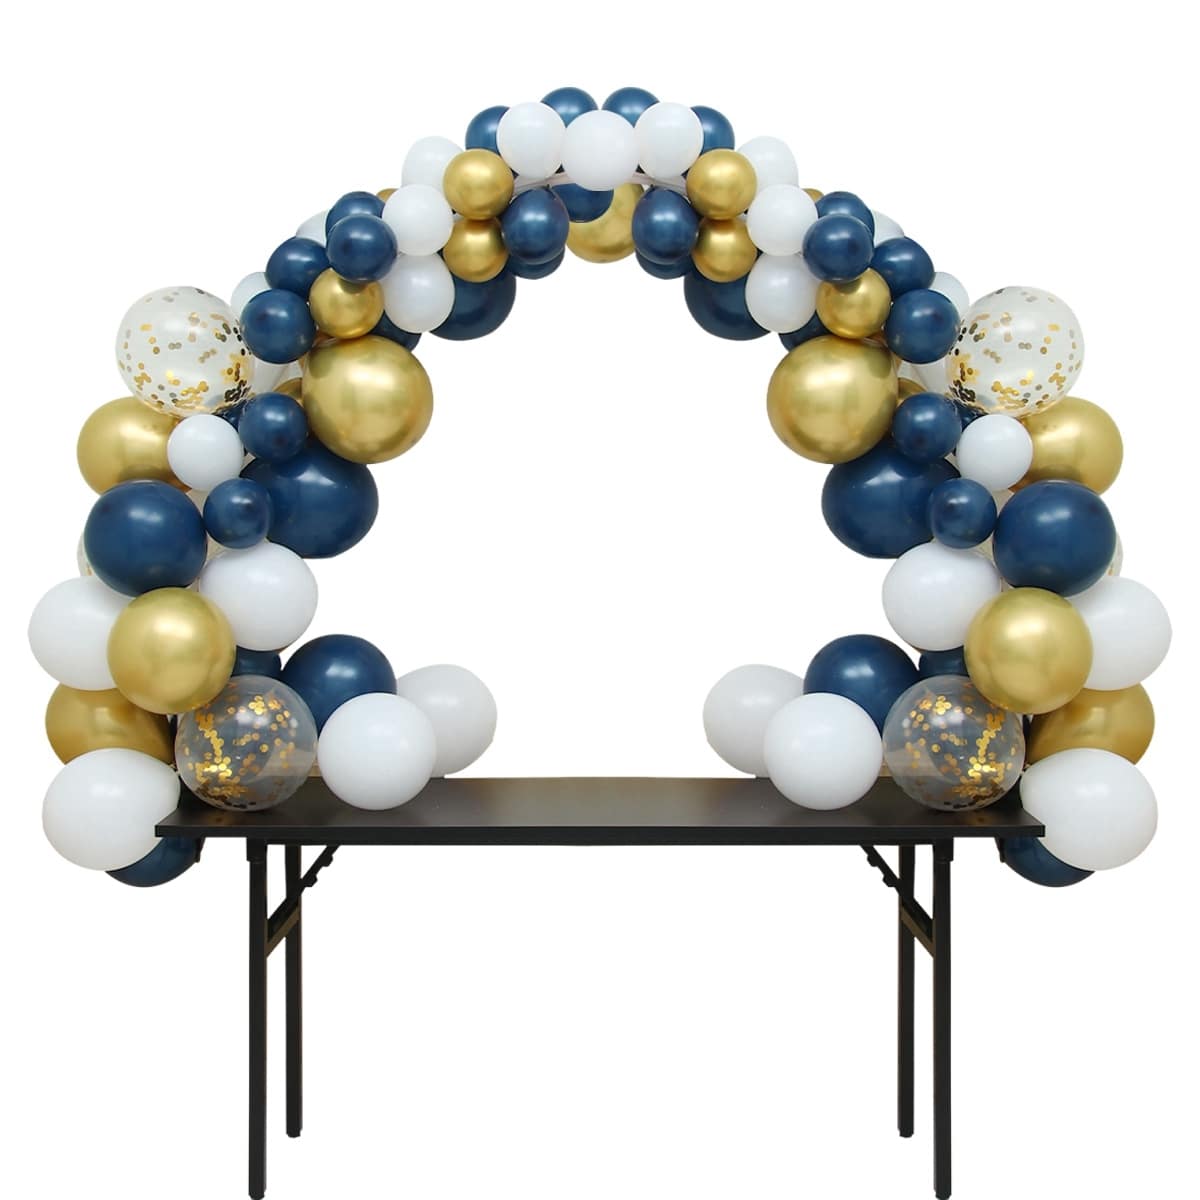 Structure arche de ballon pour table